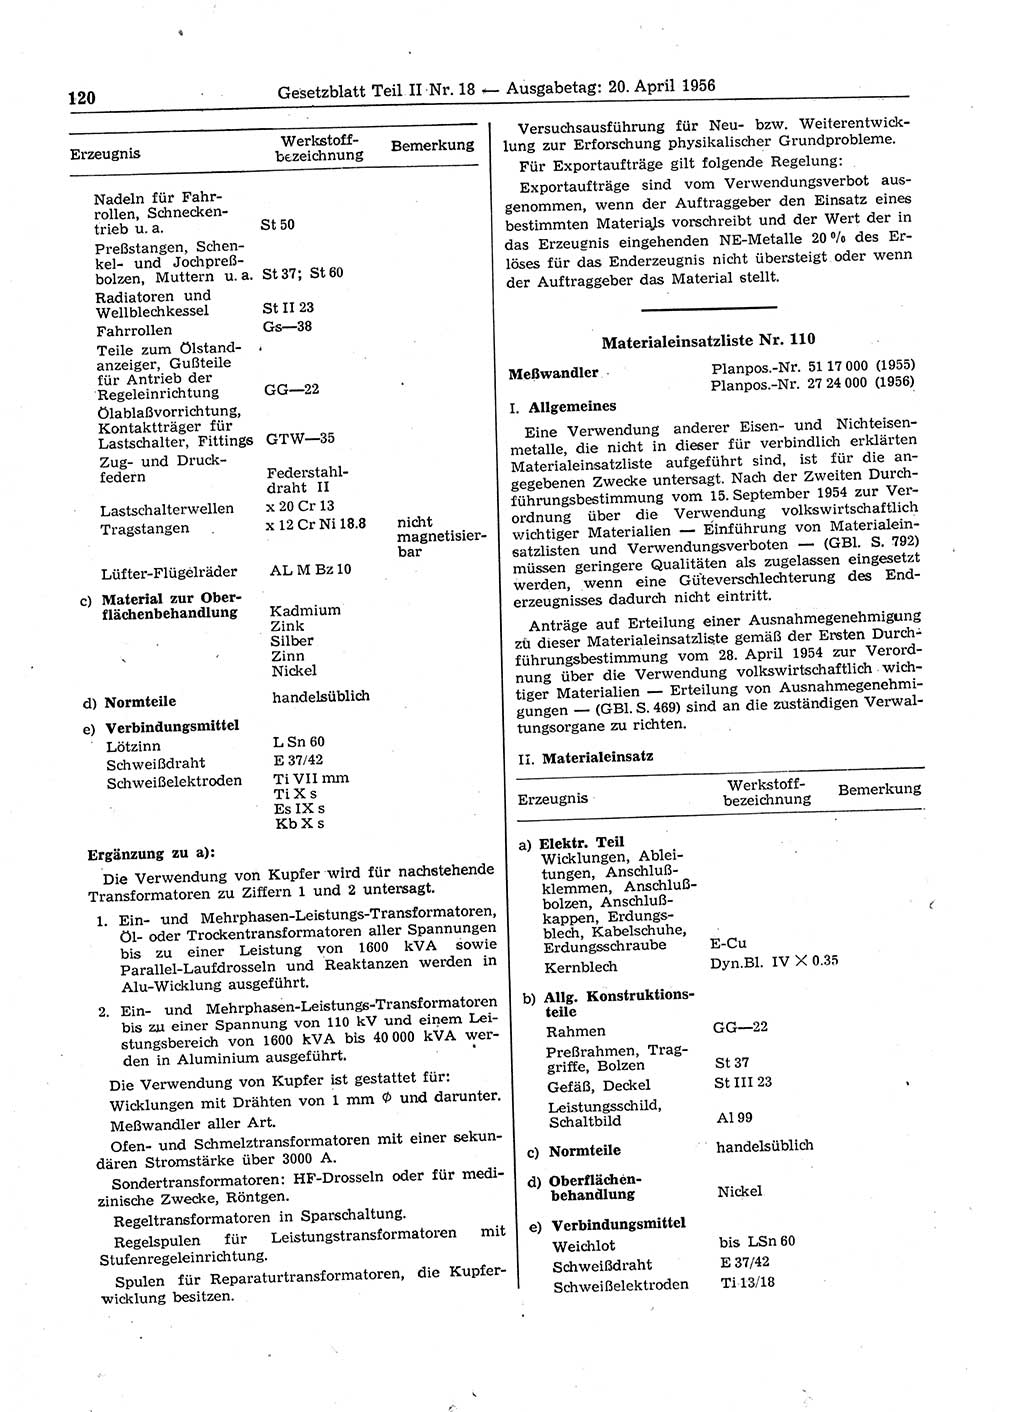 Gesetzblatt (GBl.) der Deutschen Demokratischen Republik (DDR) Teil ⅠⅠ 1956, Seite 120 (GBl. DDR ⅠⅠ 1956, S. 120)